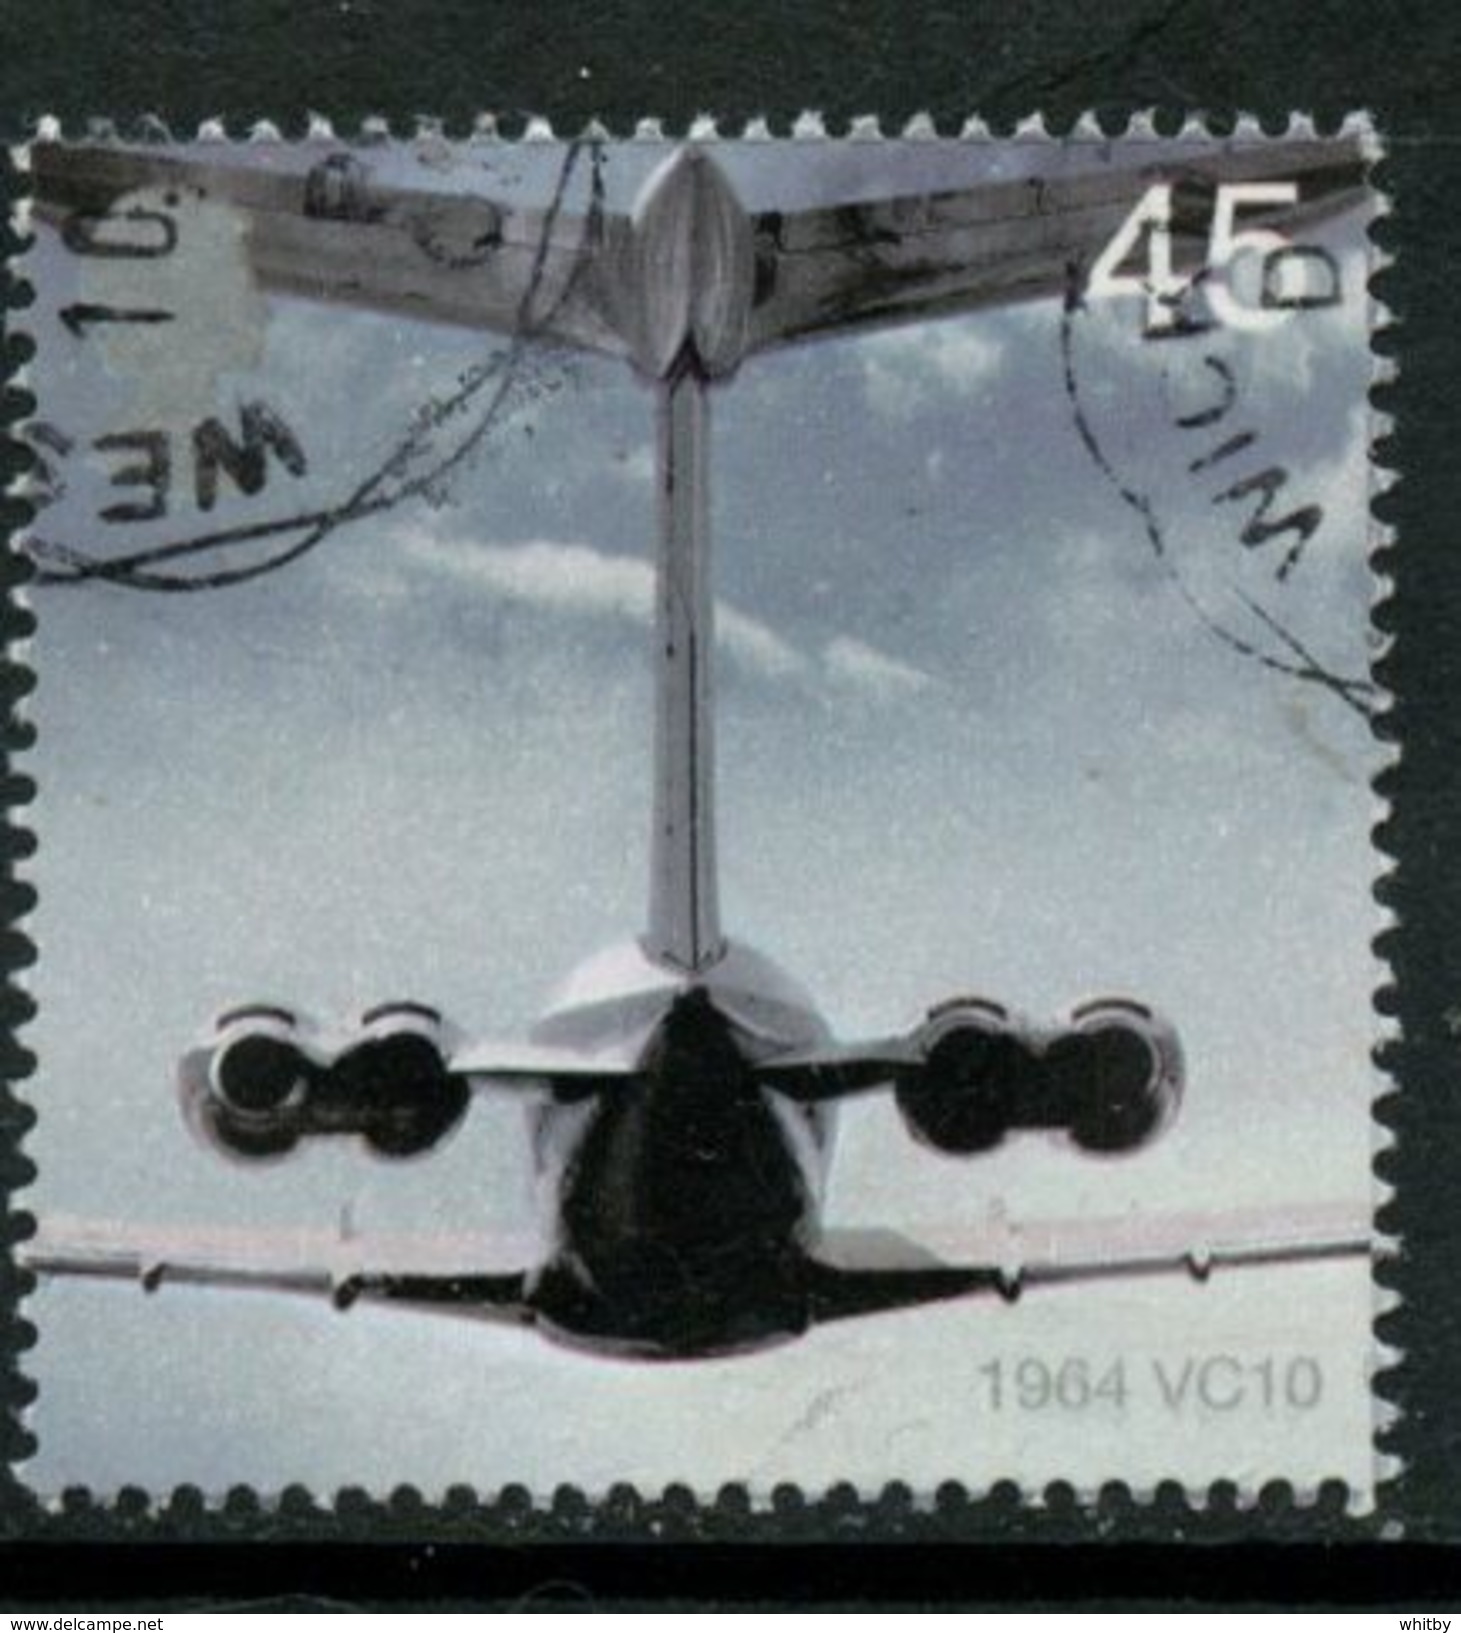 Great Britain 2002 45p VC10 Jet Issue #2051 - Gebruikt